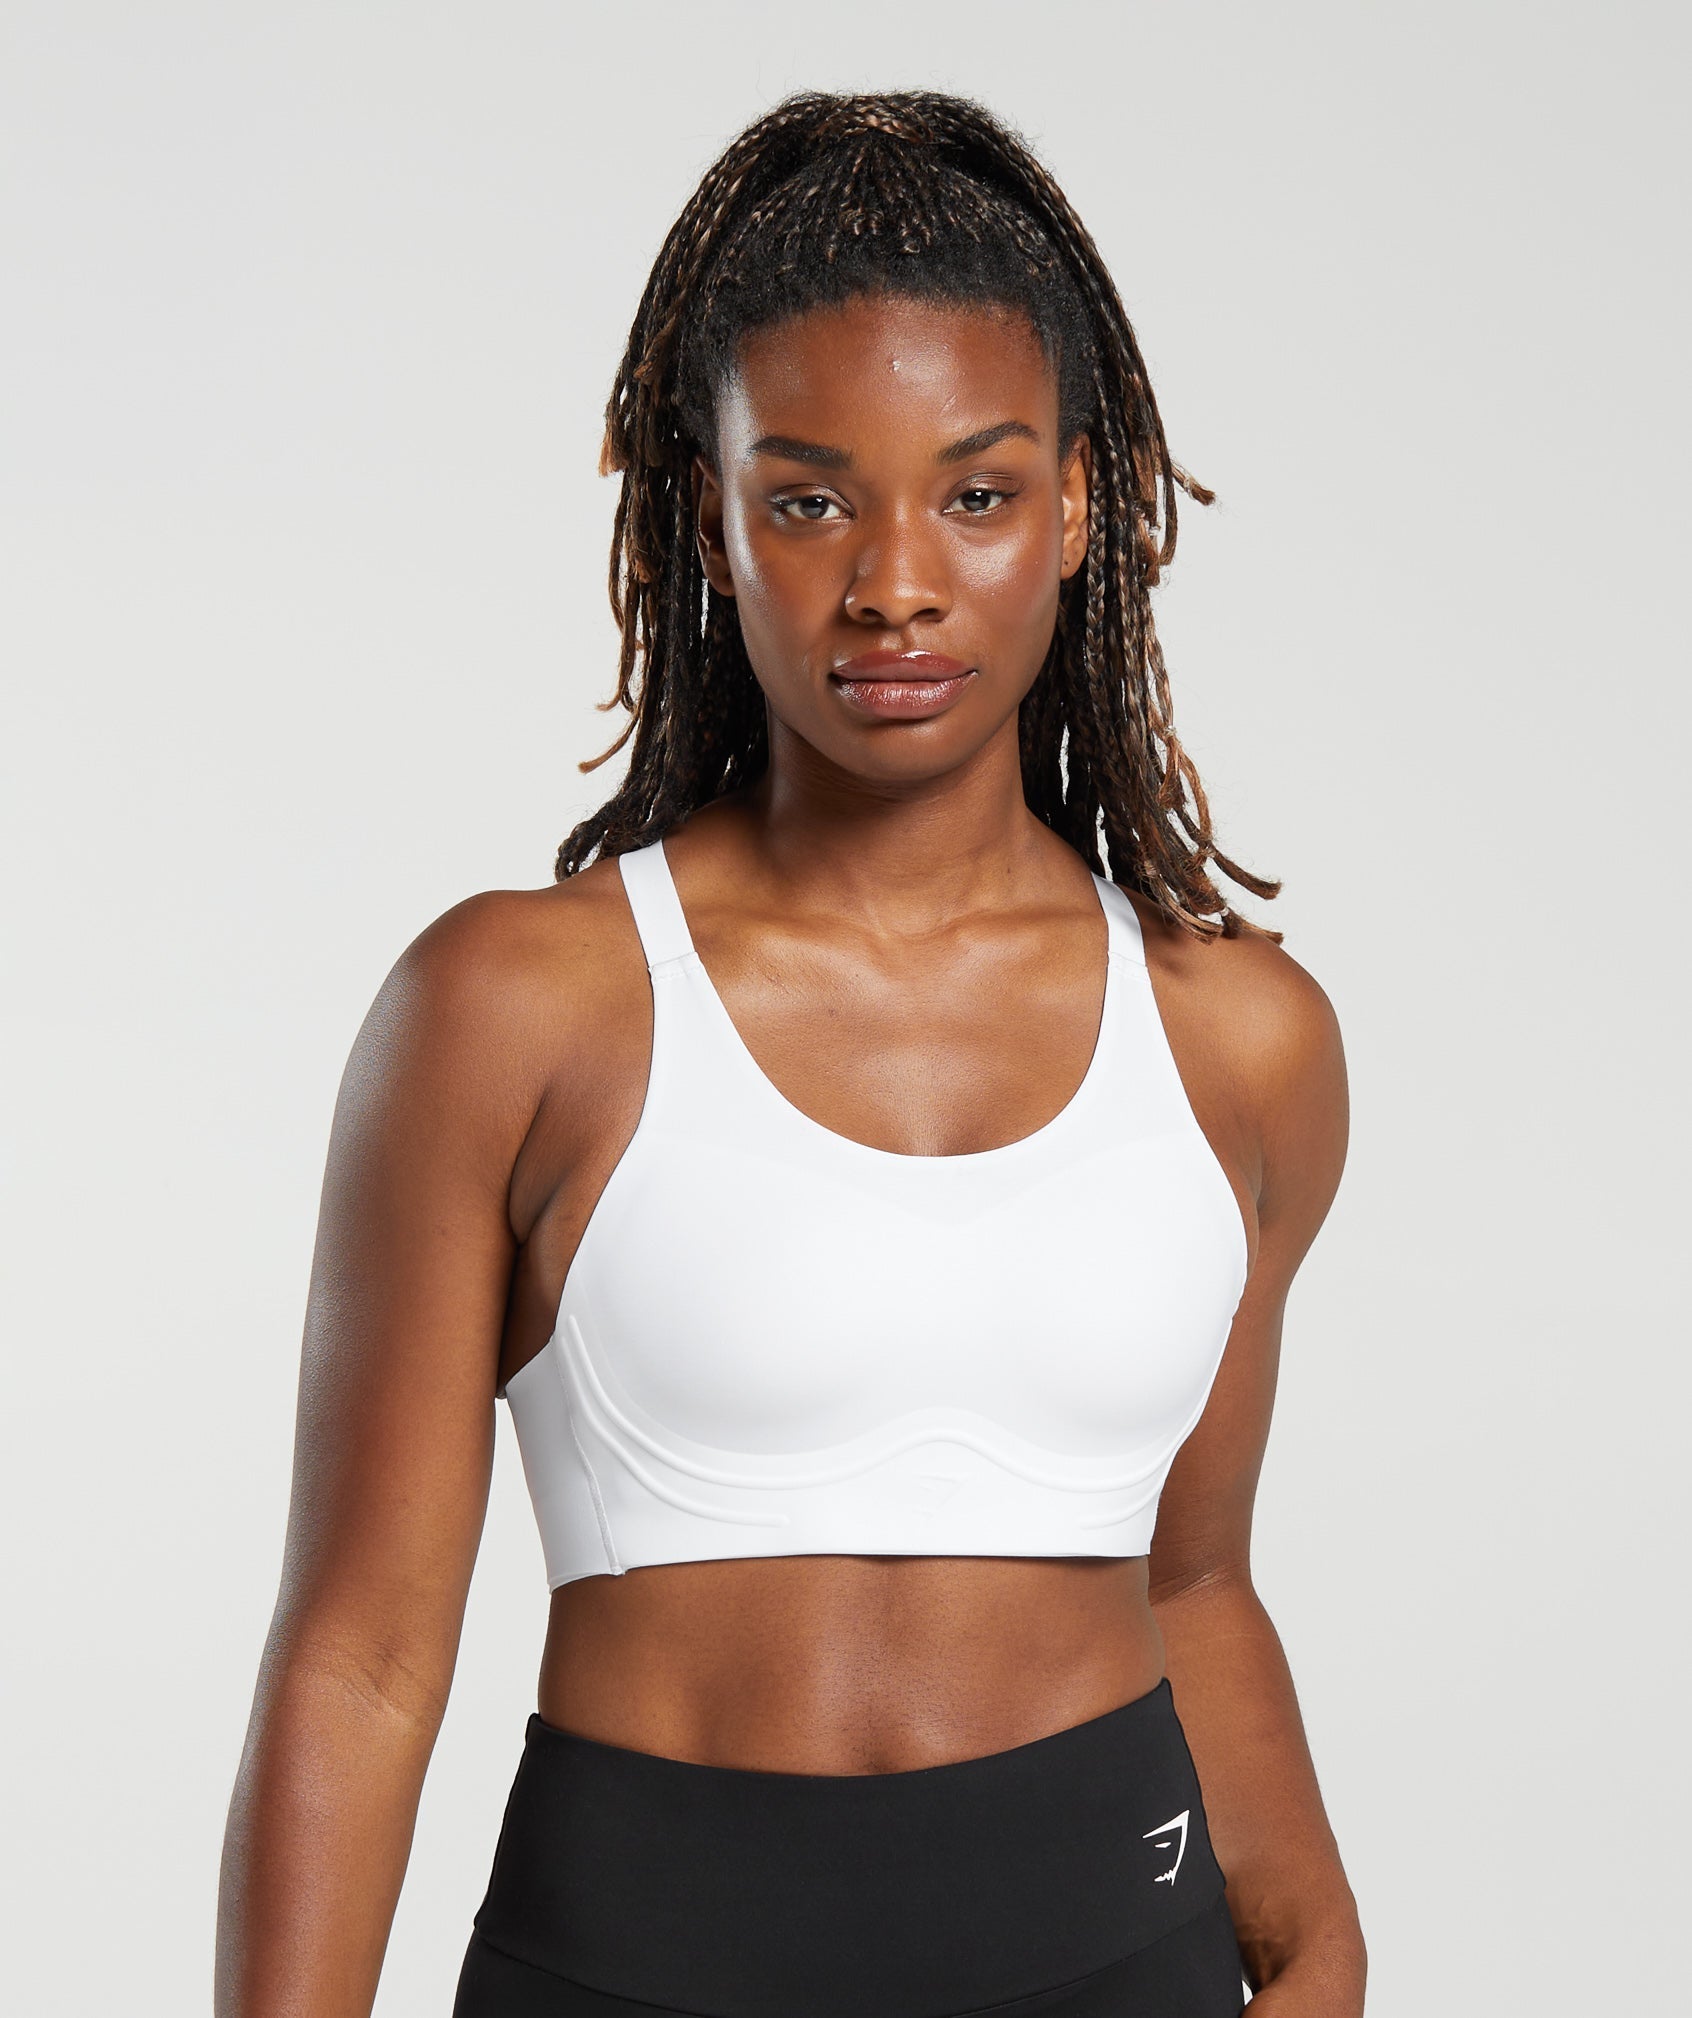 Women's Black Moulded Cups Sports Bras. Nike CA